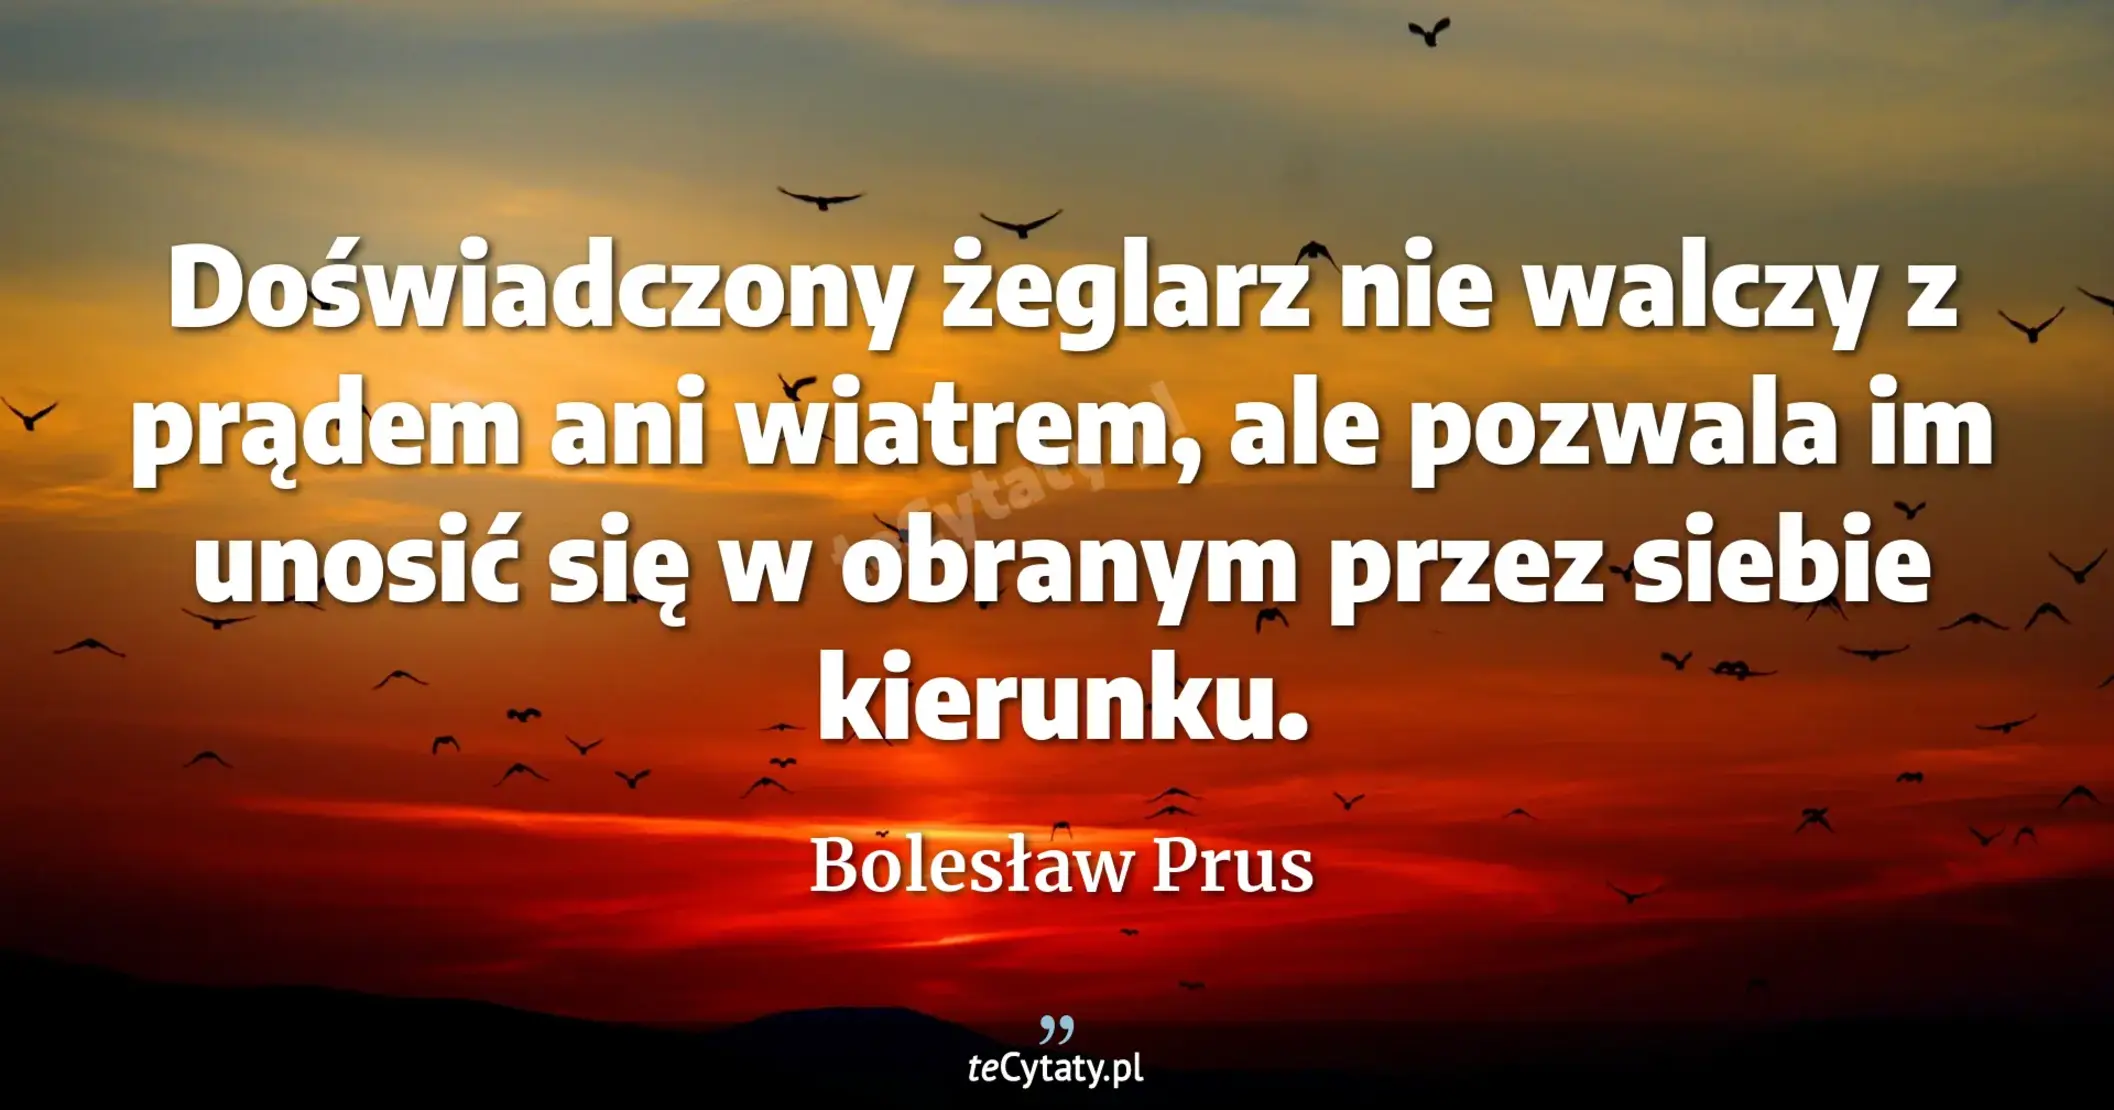 Doświadczony żeglarz nie walczy z prądem ani wiatrem, ale pozwala im unosić się w obranym przez siebie kierunku. - Bolesław Prus